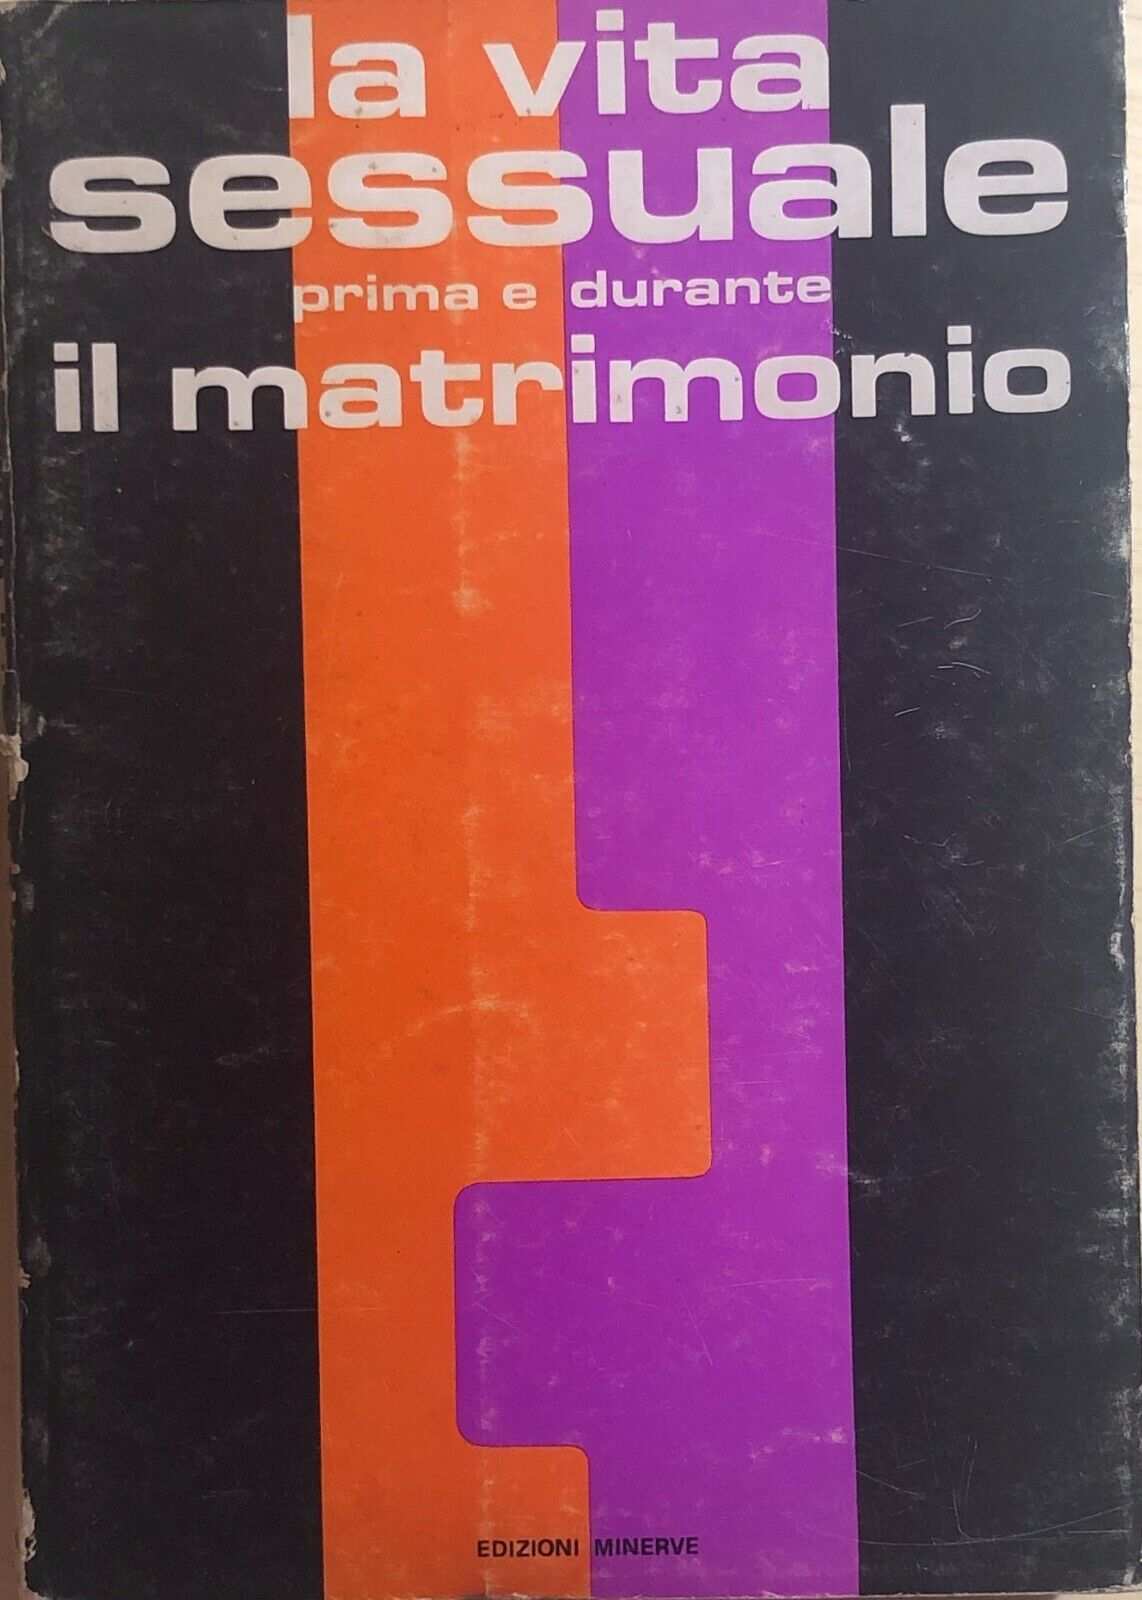 La vita sessuale prima e durante il matrimonio di Aa.vv., 1970, Edizioni Minerve